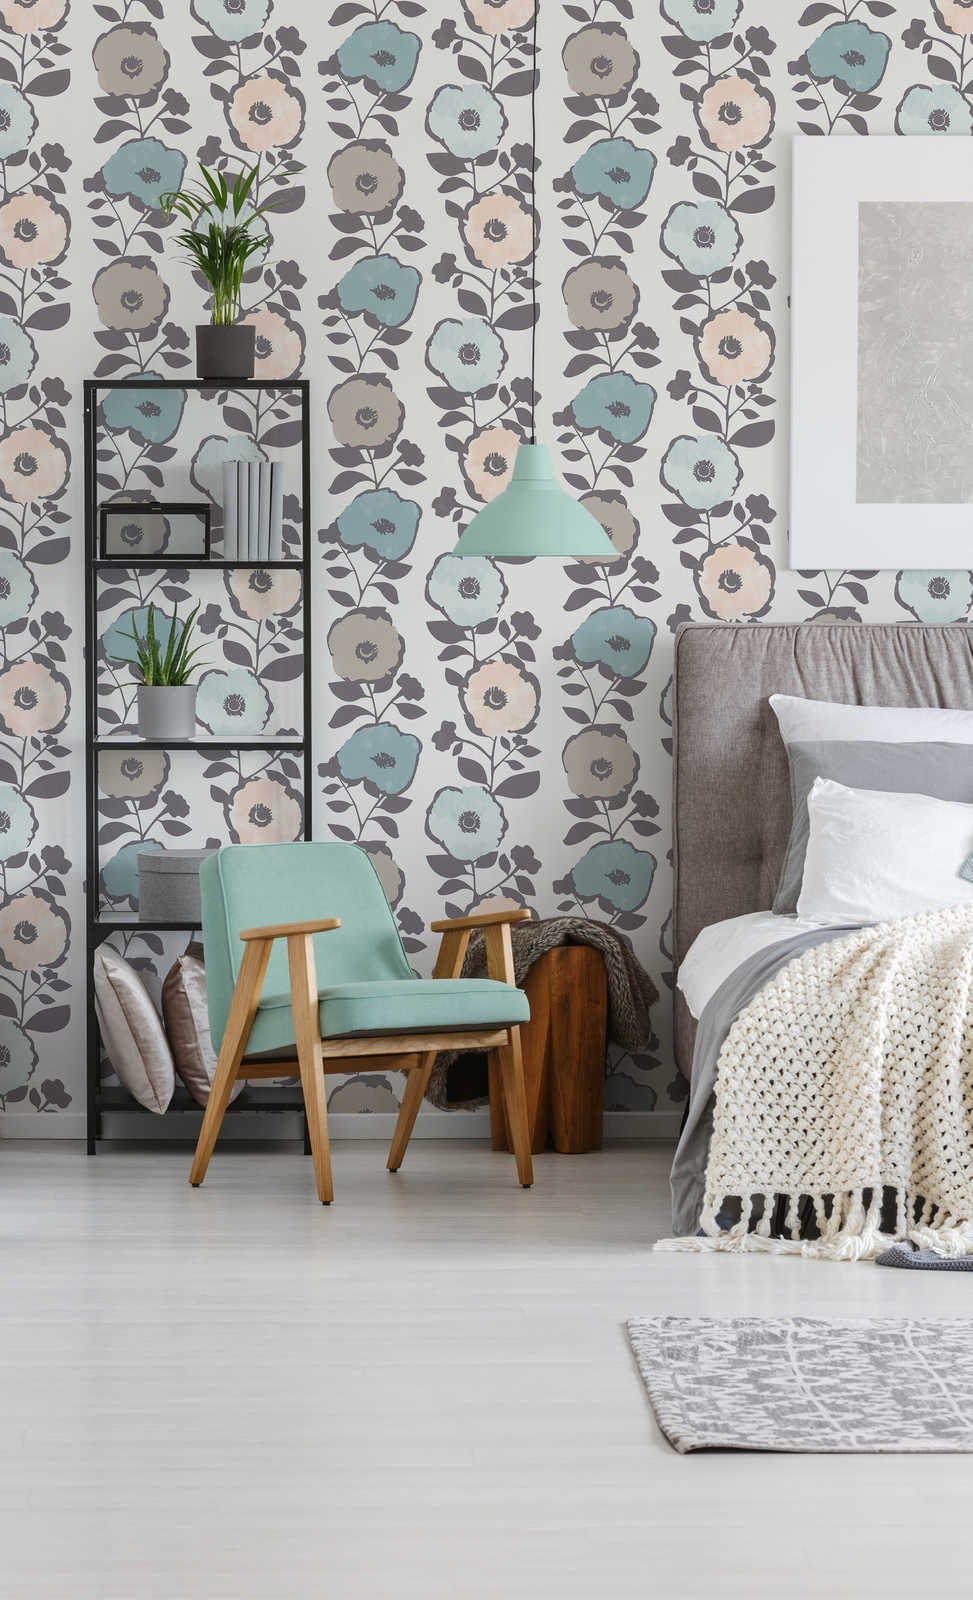             Wallpaper flowers decor in Scandinavian style - beige, grey
        